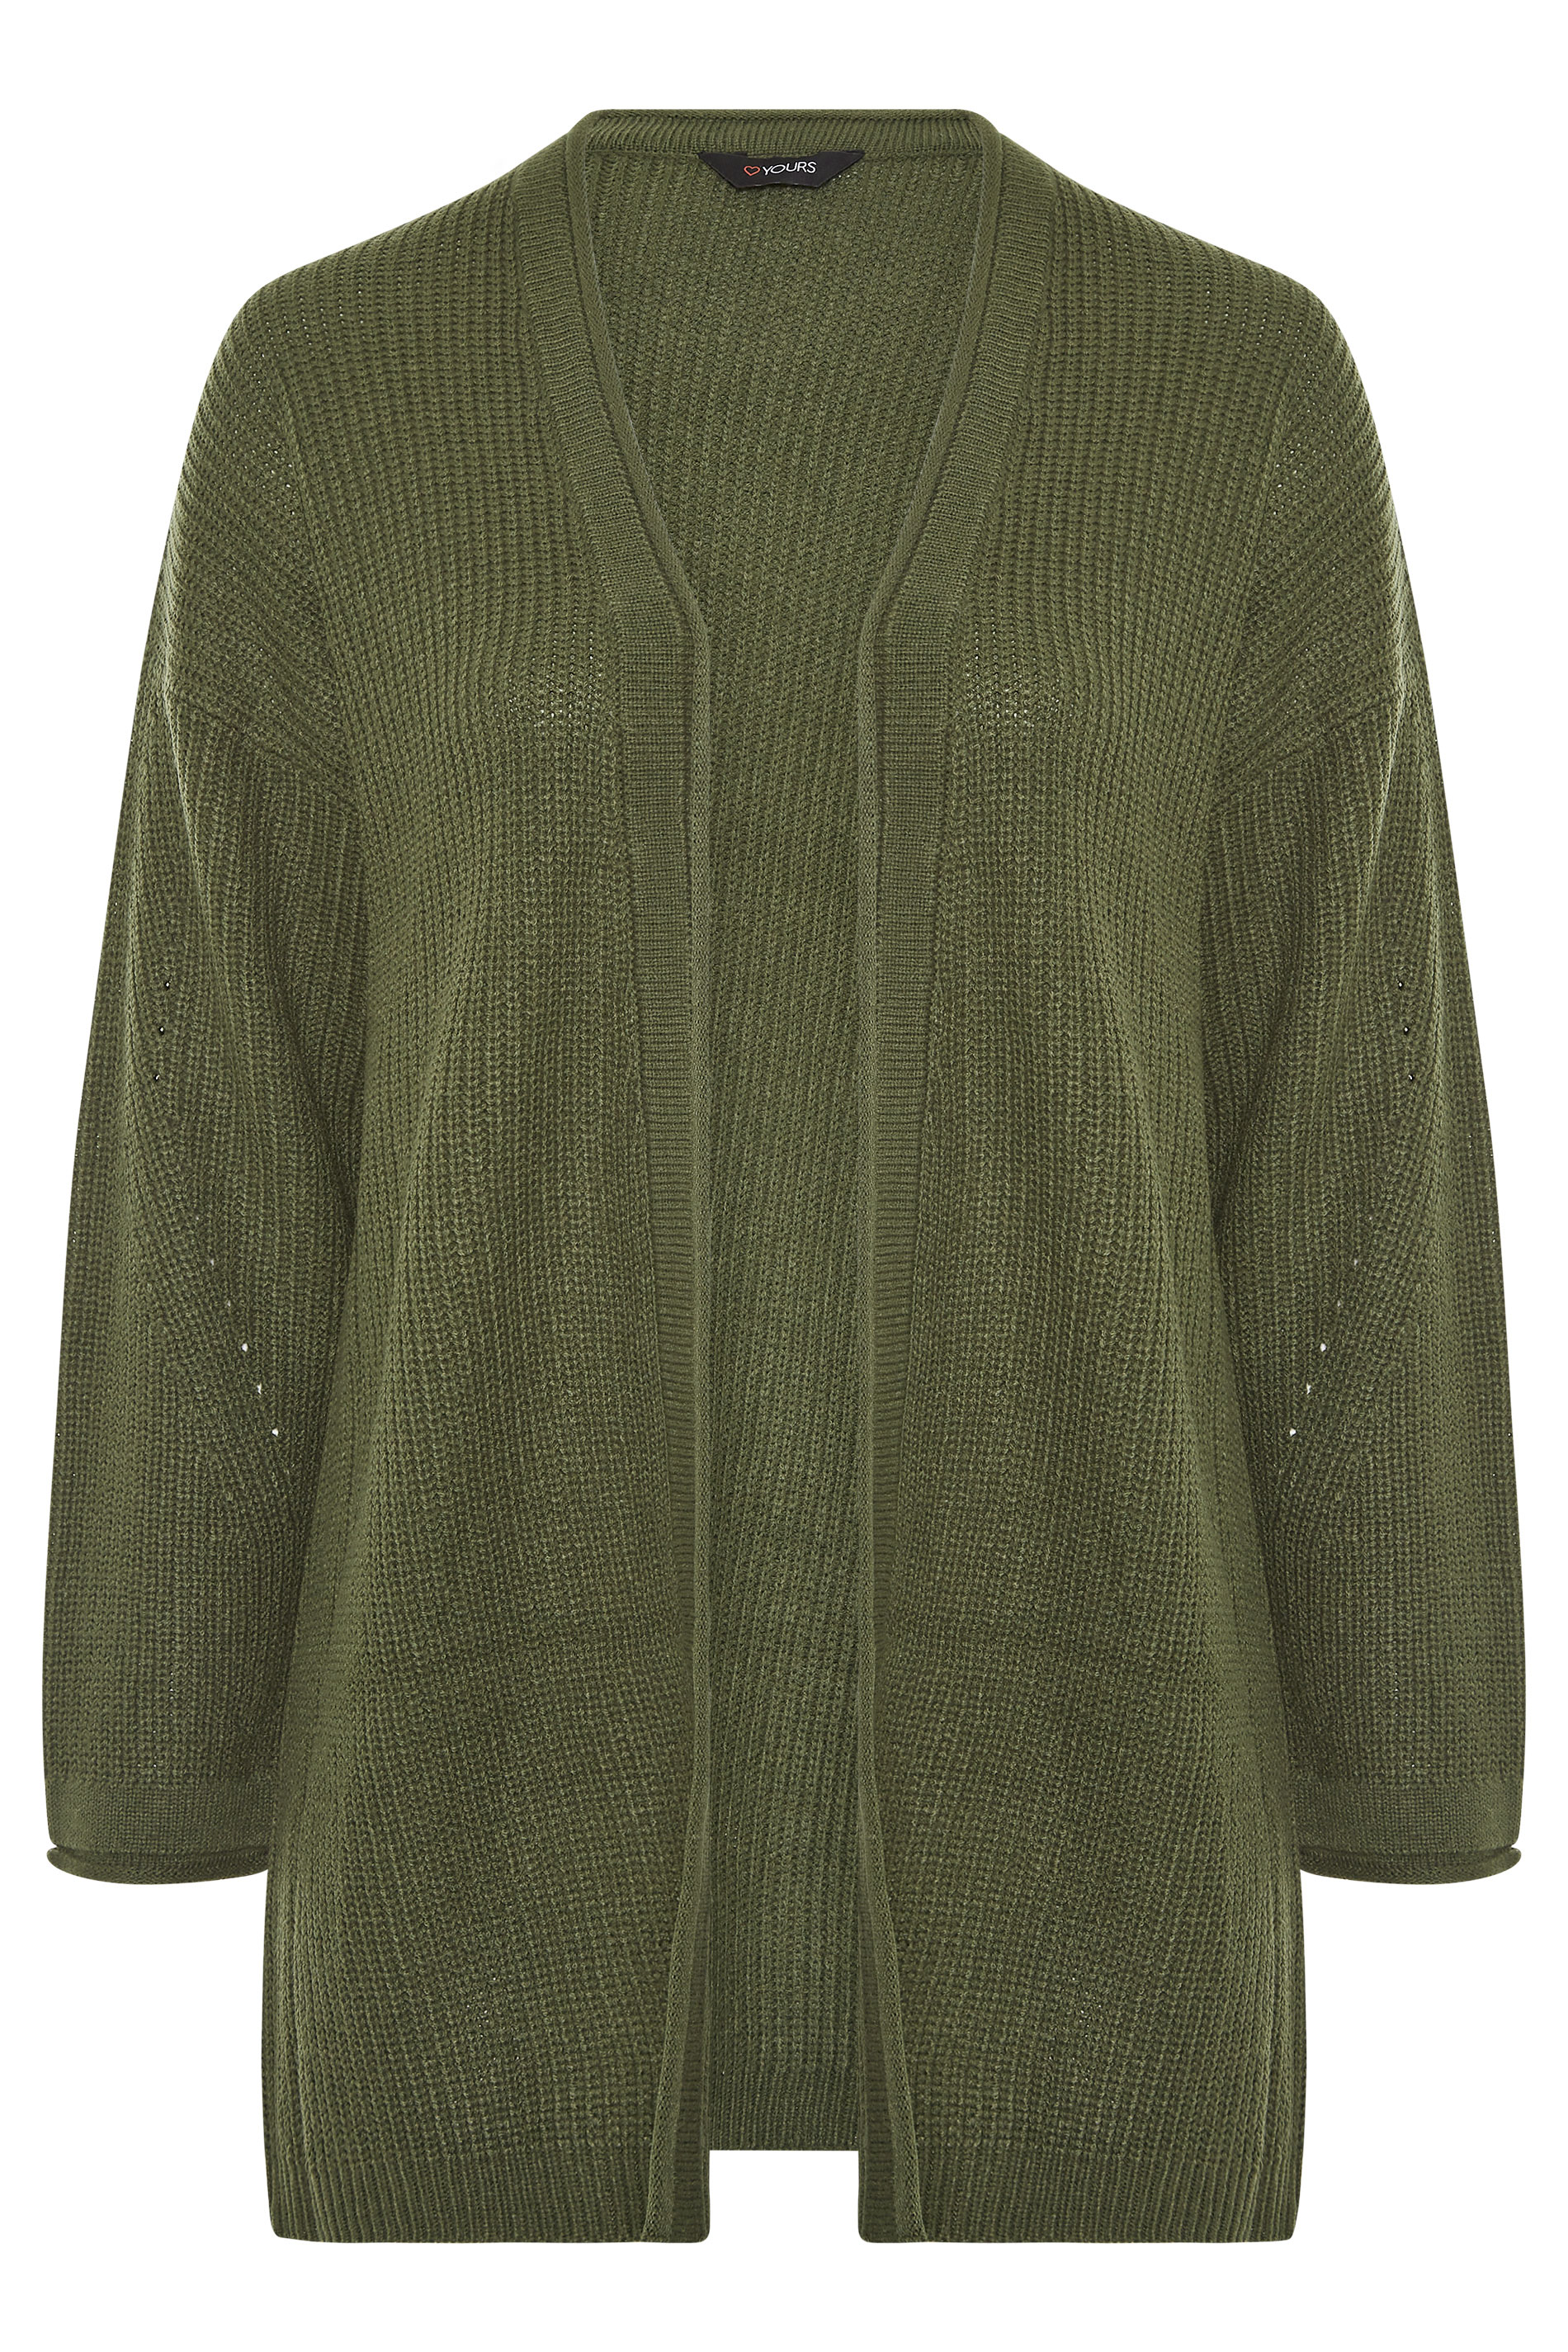 Plus Size Khaki Ribbed Longline Cardigan | Yours Clothing